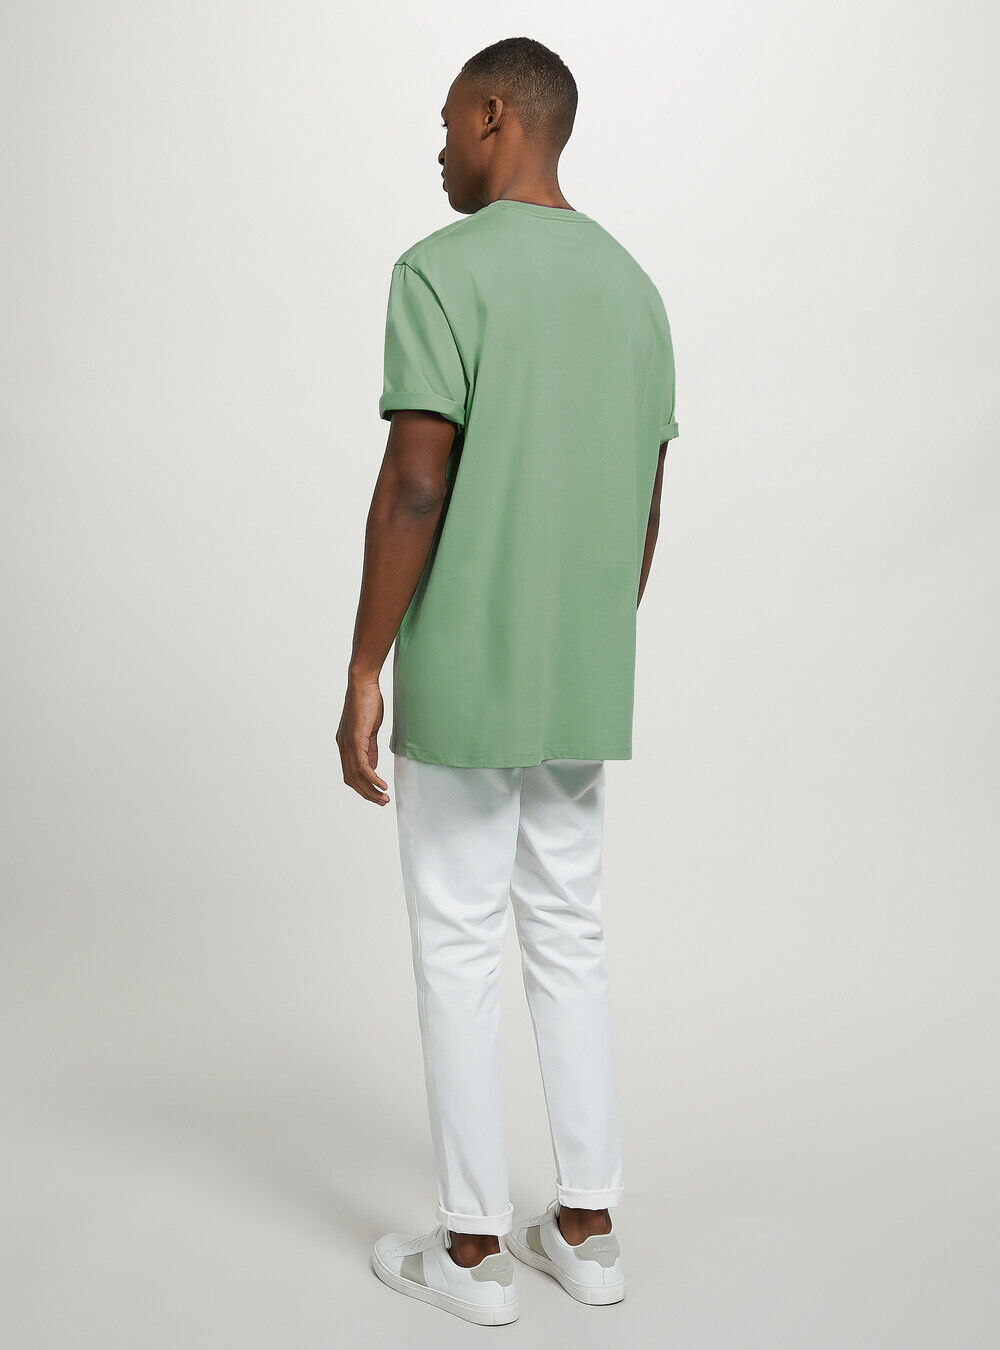 Alcott Männer Crew-Neck Cotton T-Shirt Ky3 Kaky Light Produktverbesserung T-Shirts – 2